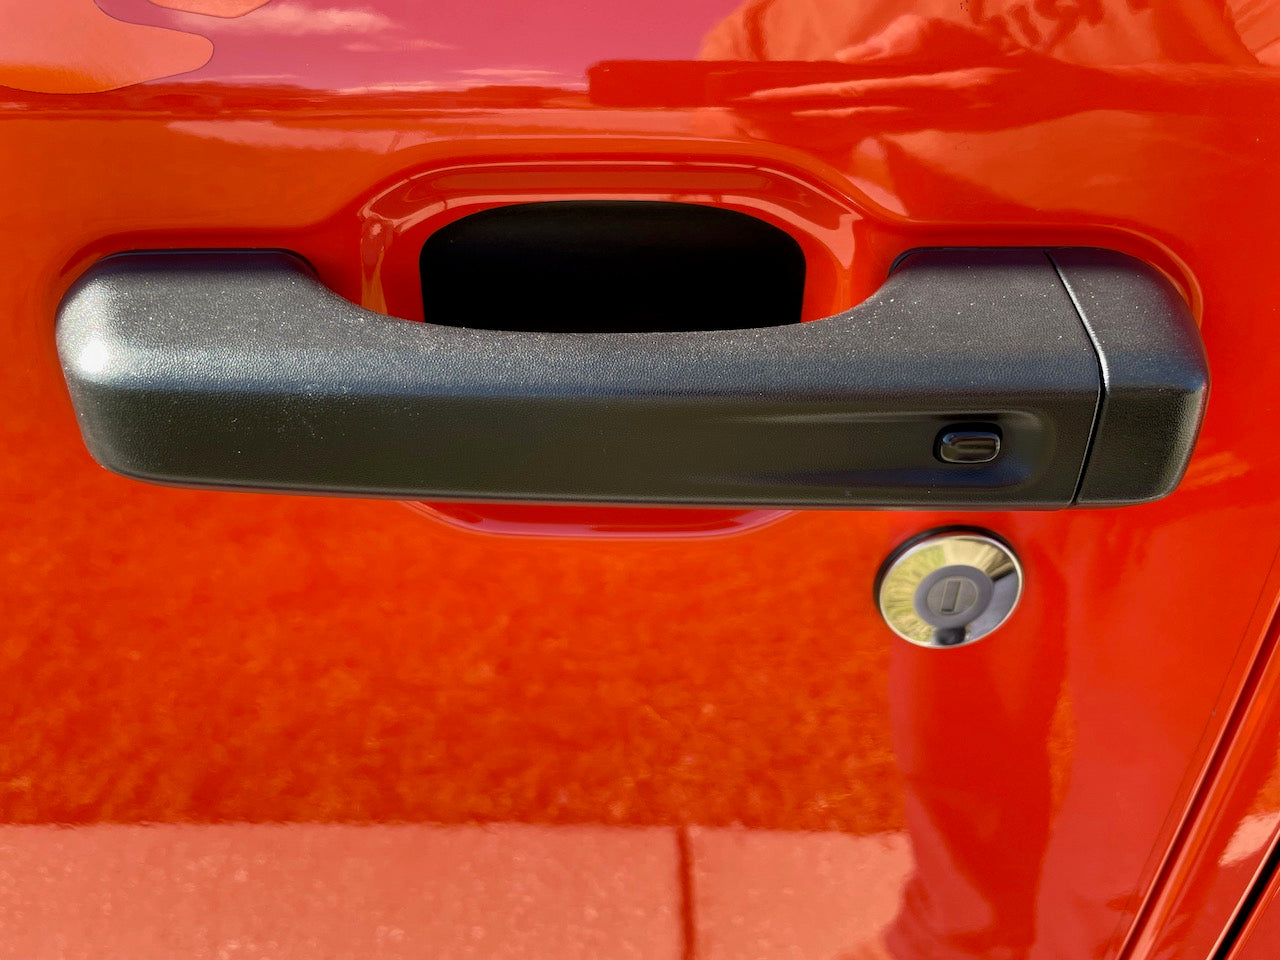 Vinyl Door Handle Protectors for your Jeep Wrangler JL and